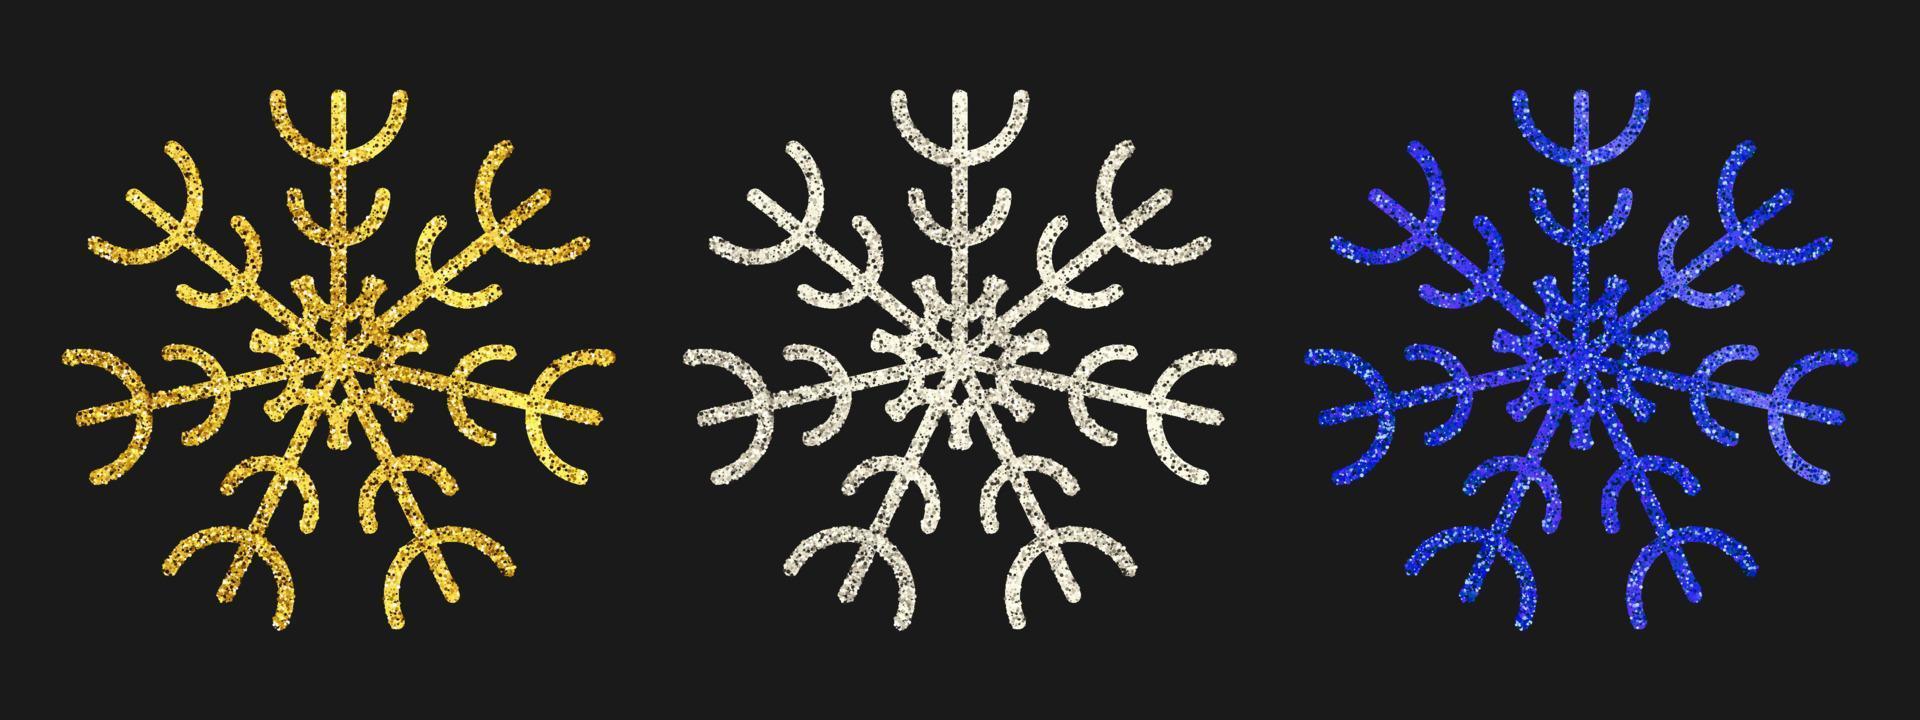 copos de nieve brillantes sobre fondo oscuro. juego de tres copos de nieve con purpurina dorada, plateada y azul. elementos de decoración de navidad y año nuevo. ilustración vectorial vector